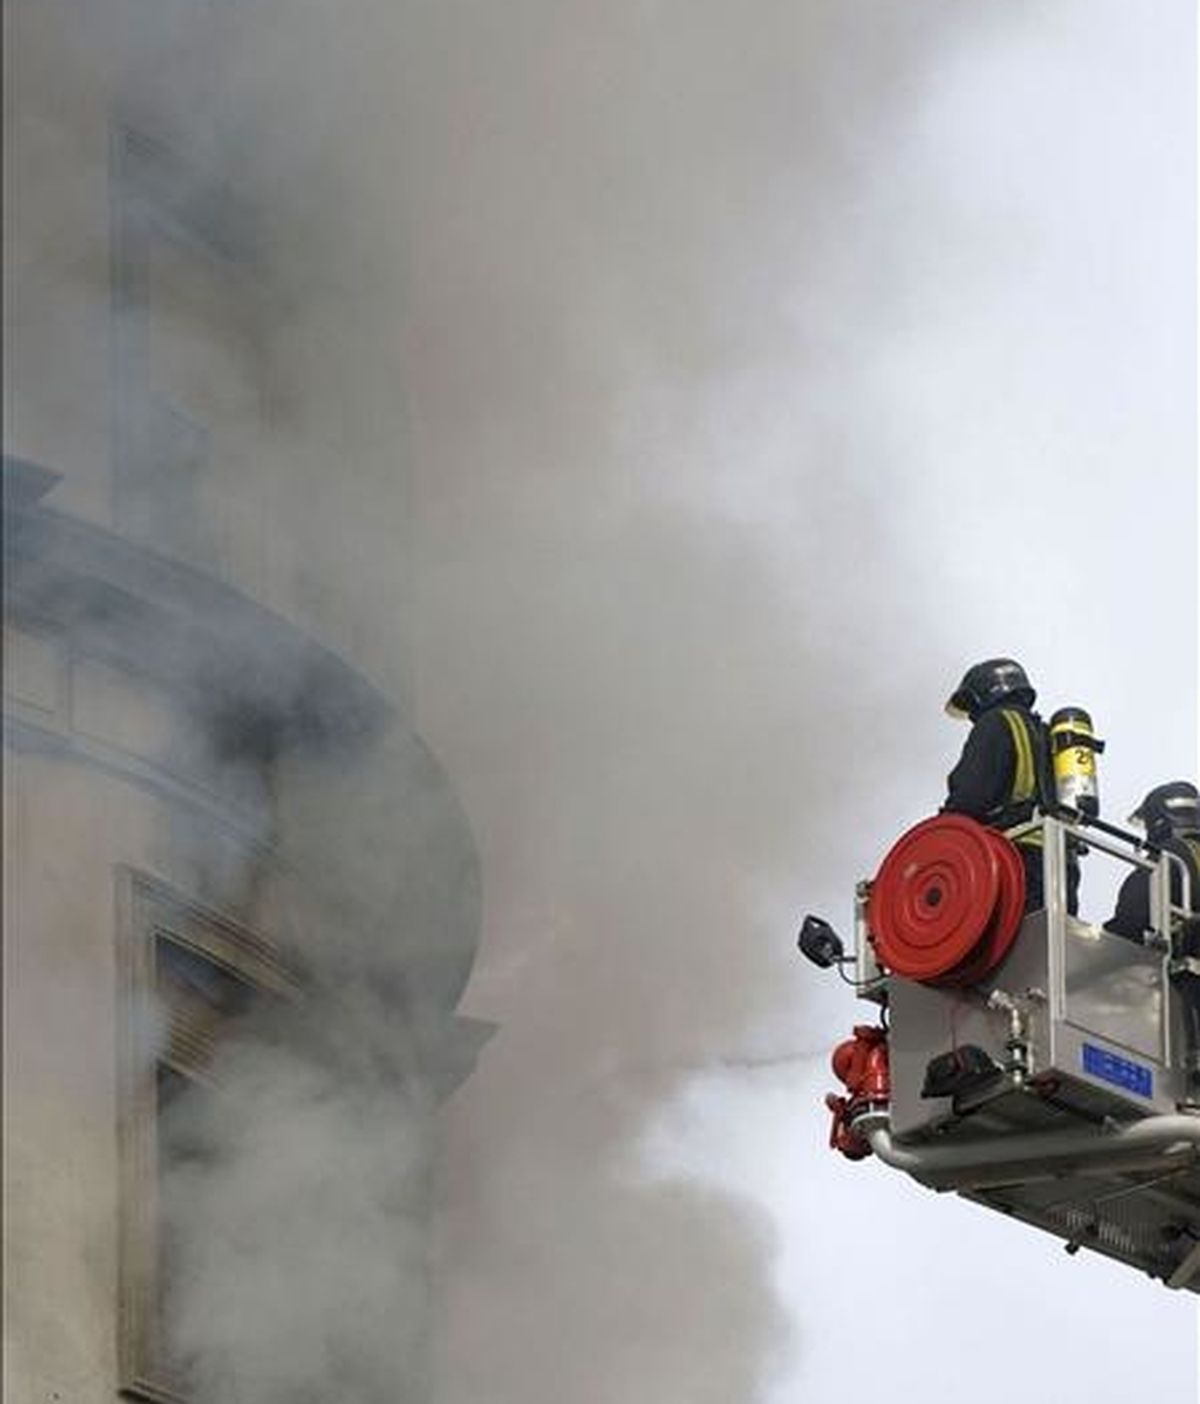 Unos bomberos trabajan en el control y extinción del incendio que se ha declarado esta mañana por causas desconocidas en una vivienda situada en la esquina de la plaza de América de Valencia con la calle de Cirilo Amorós. EFE